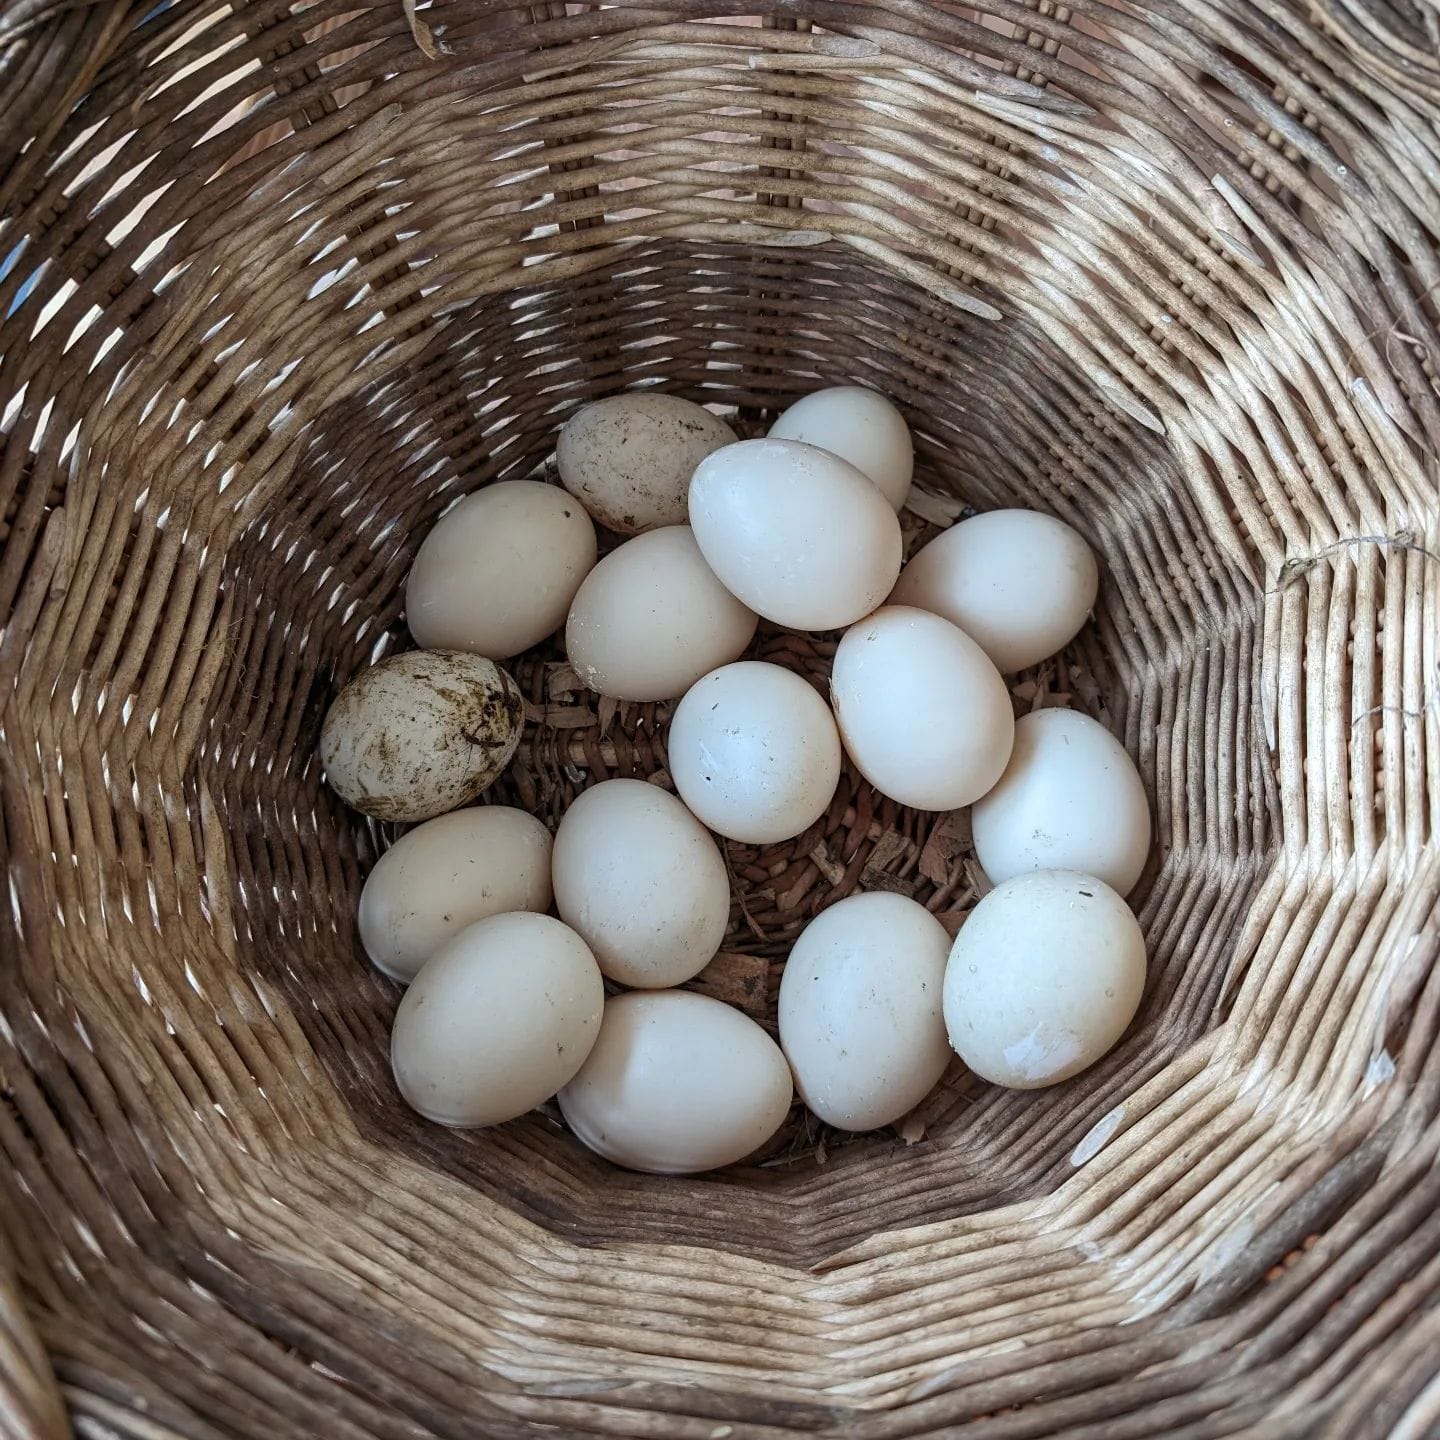 Today's egg harvest